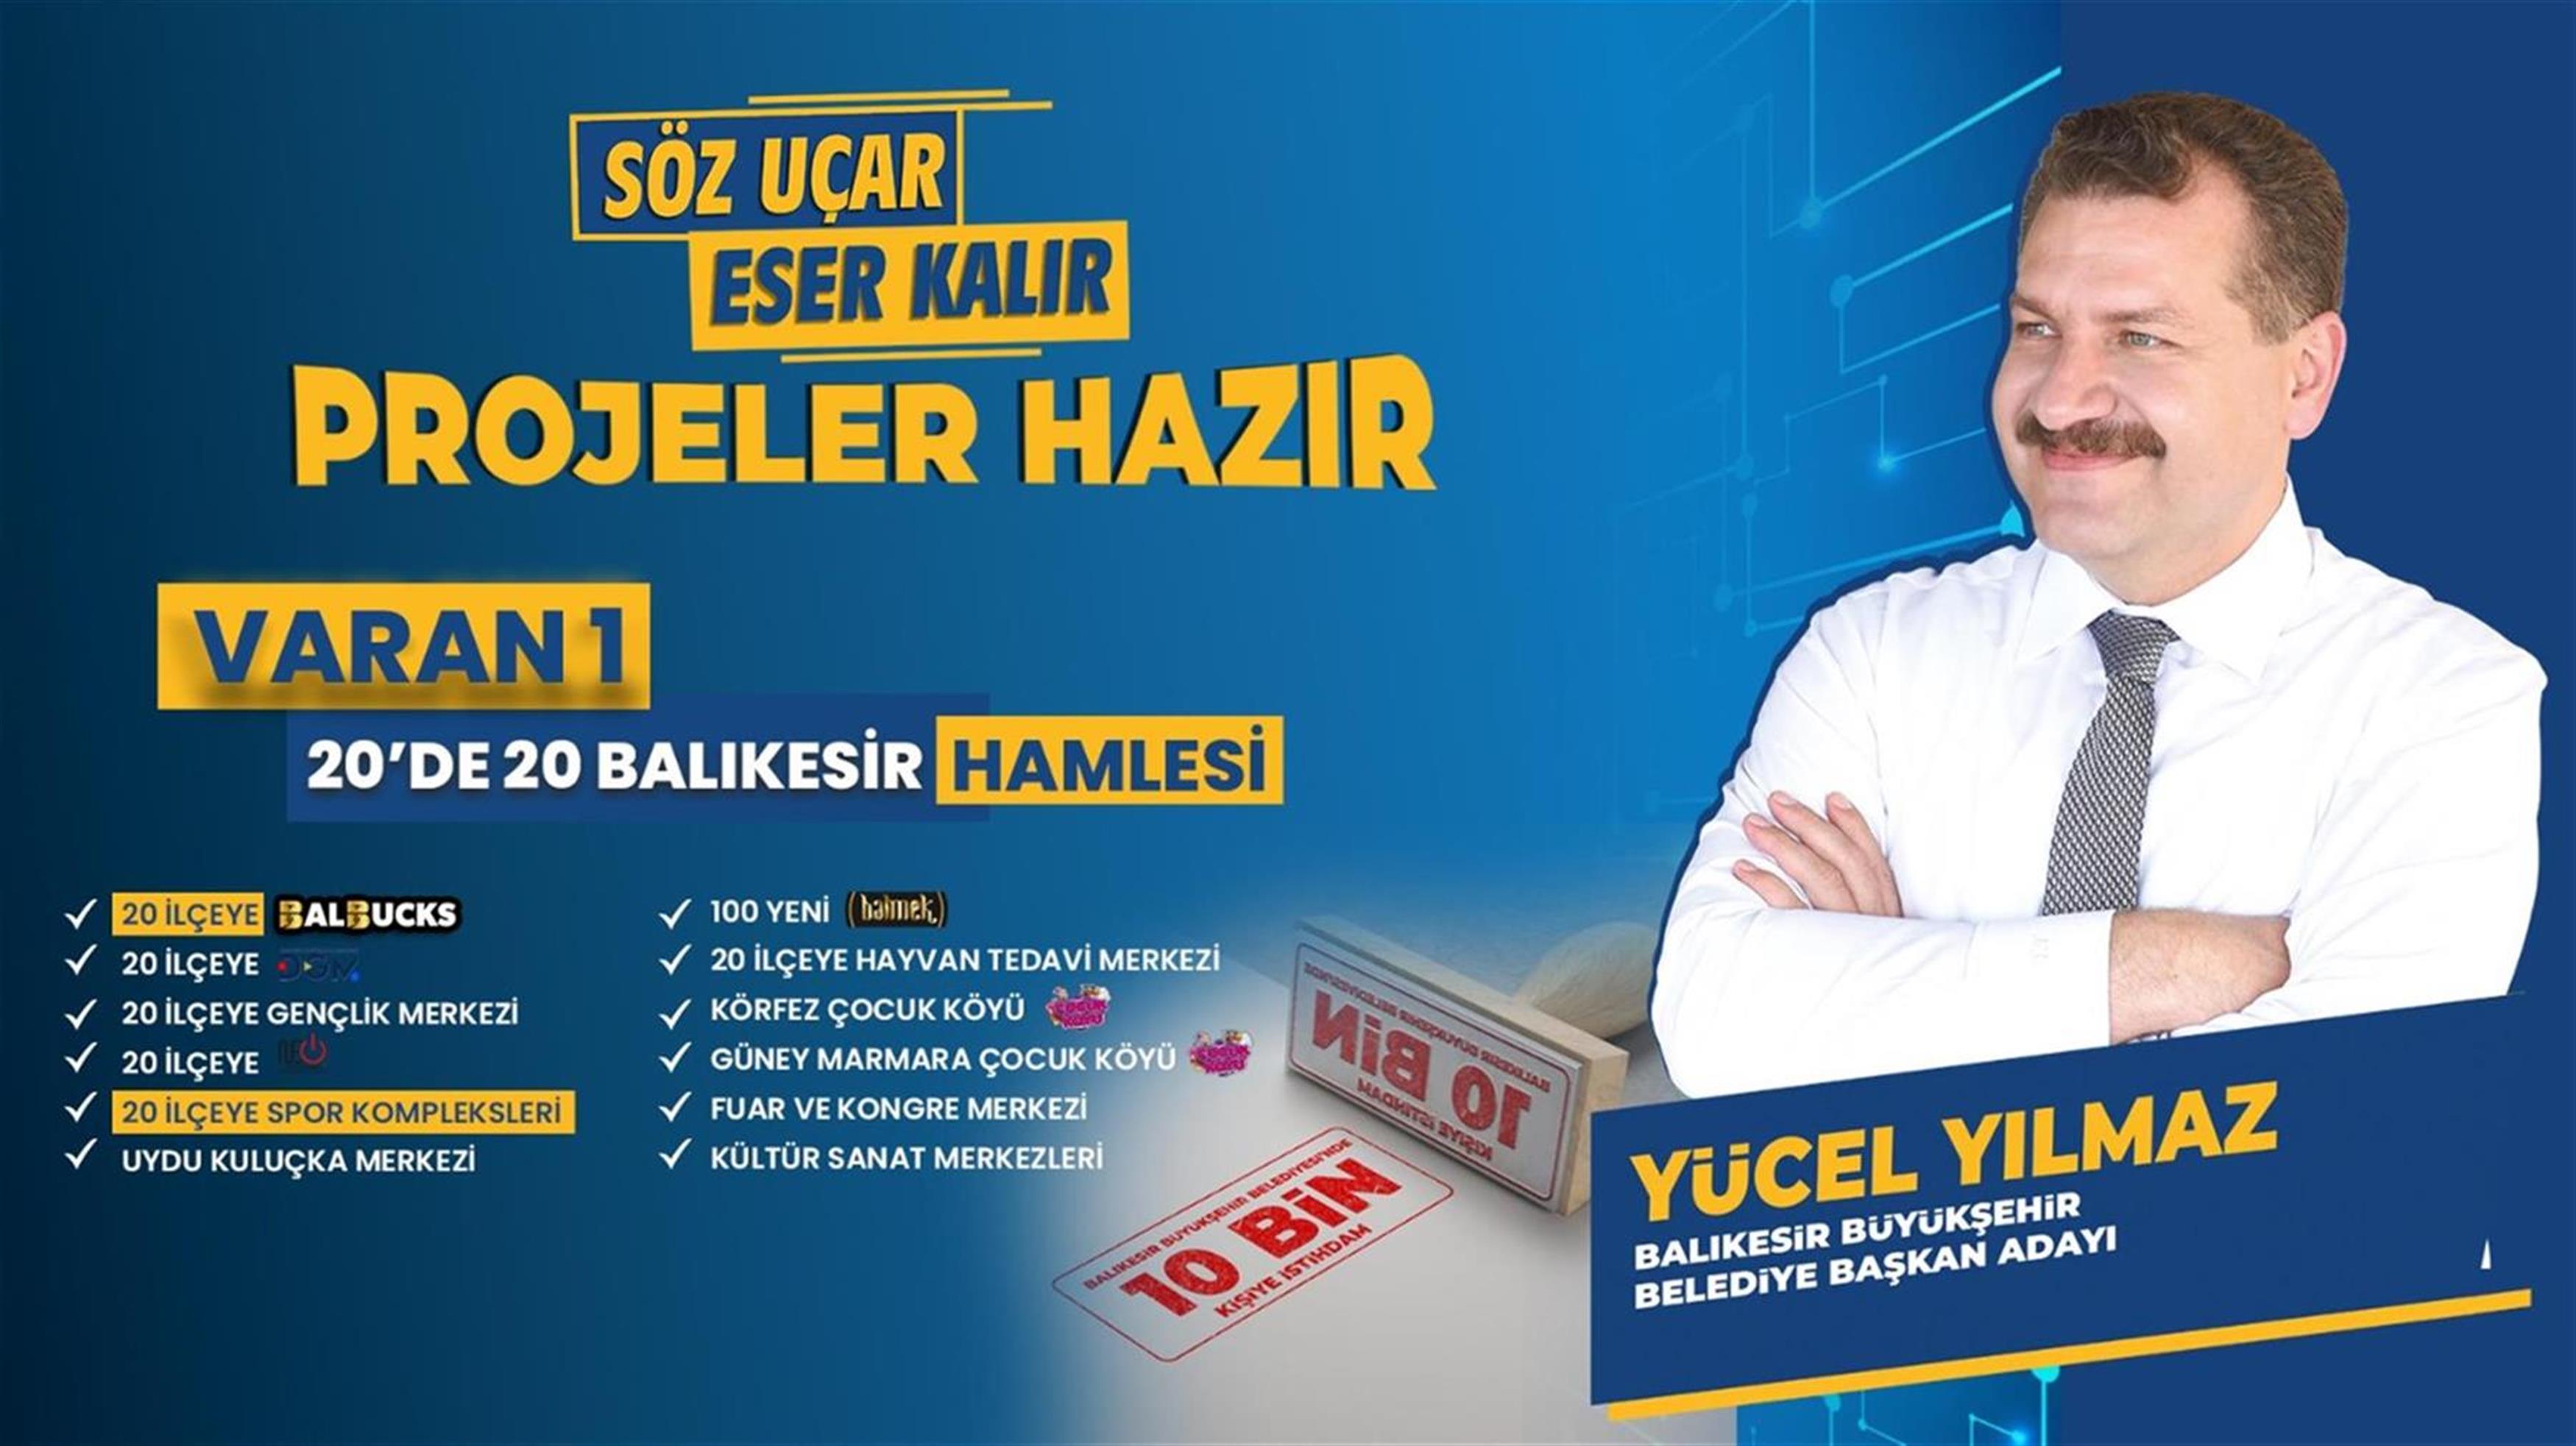 Balıkesir Büyükşehir Belediye Başkanı